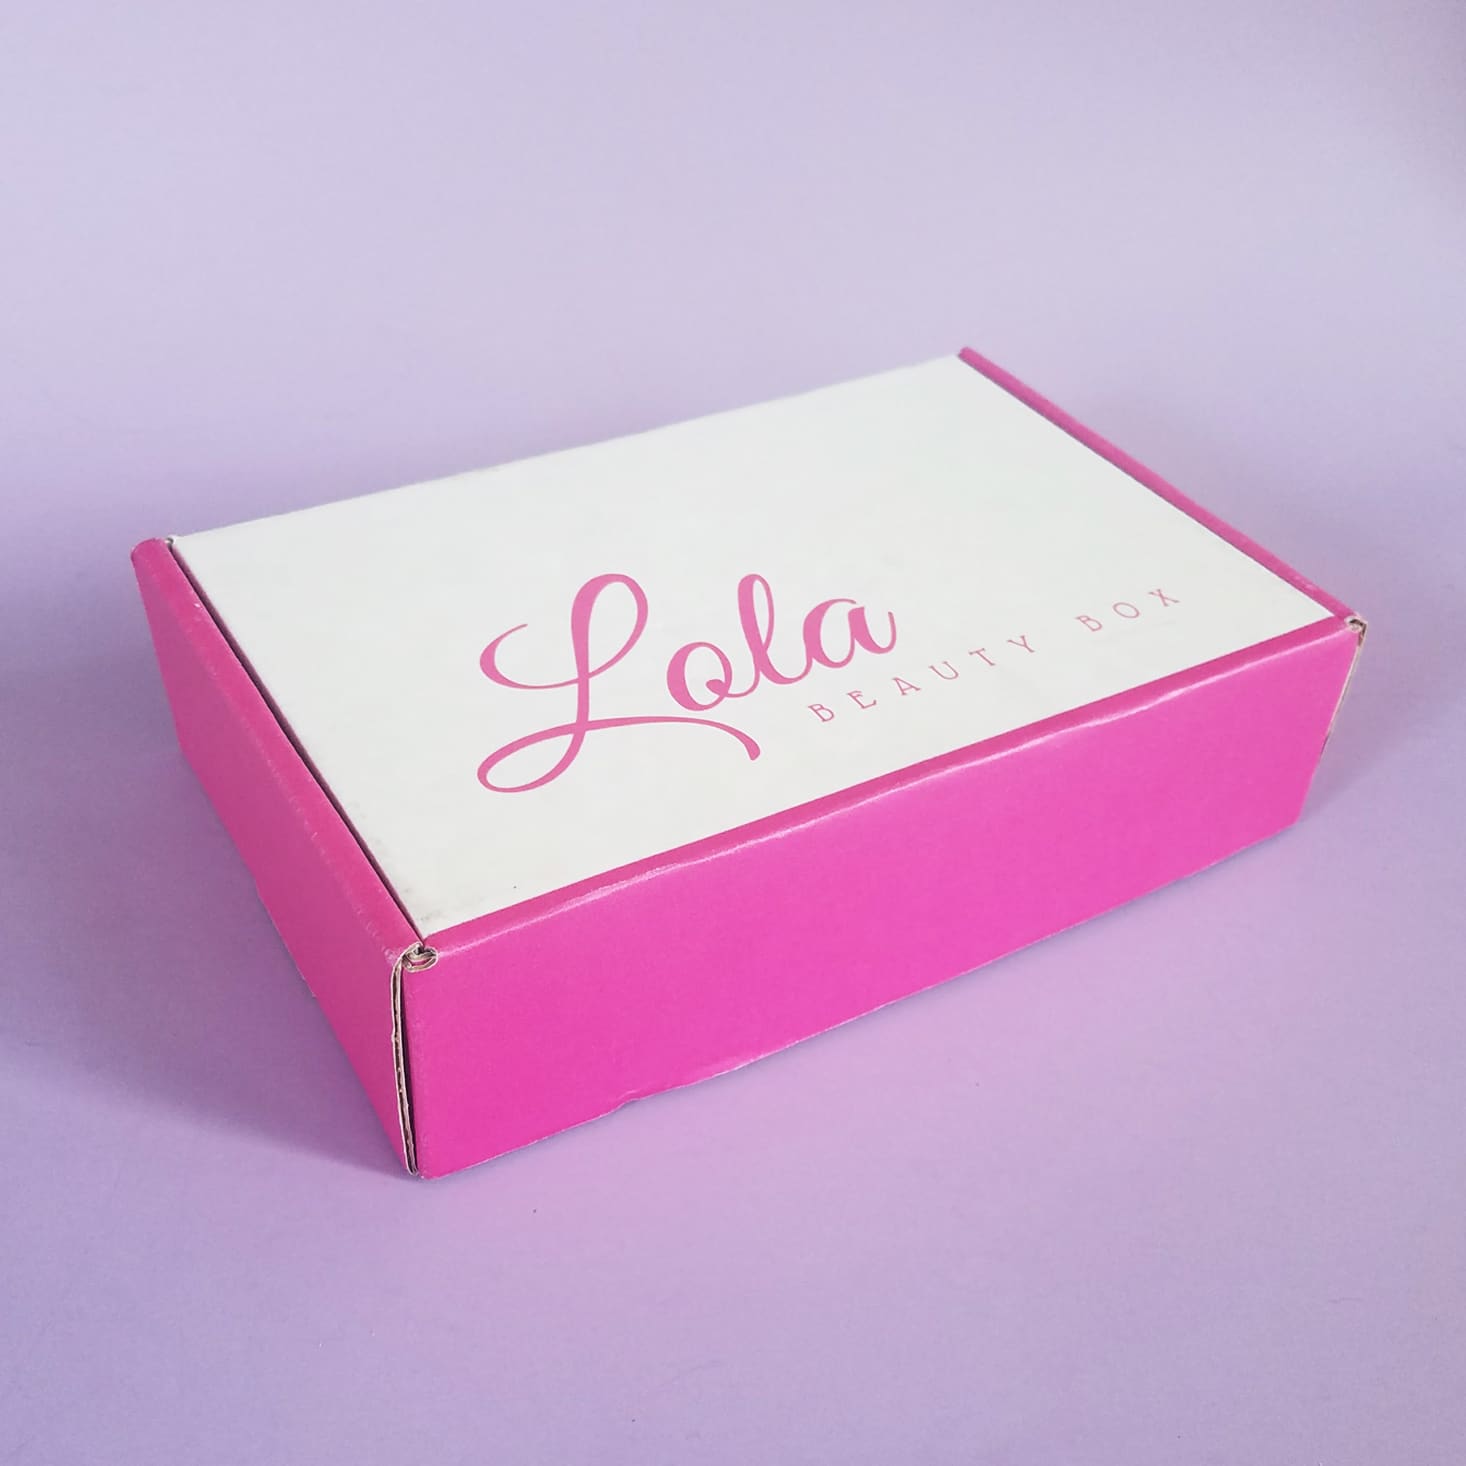 Lola Beauty Box Subscription Review + Coupon – May 2017